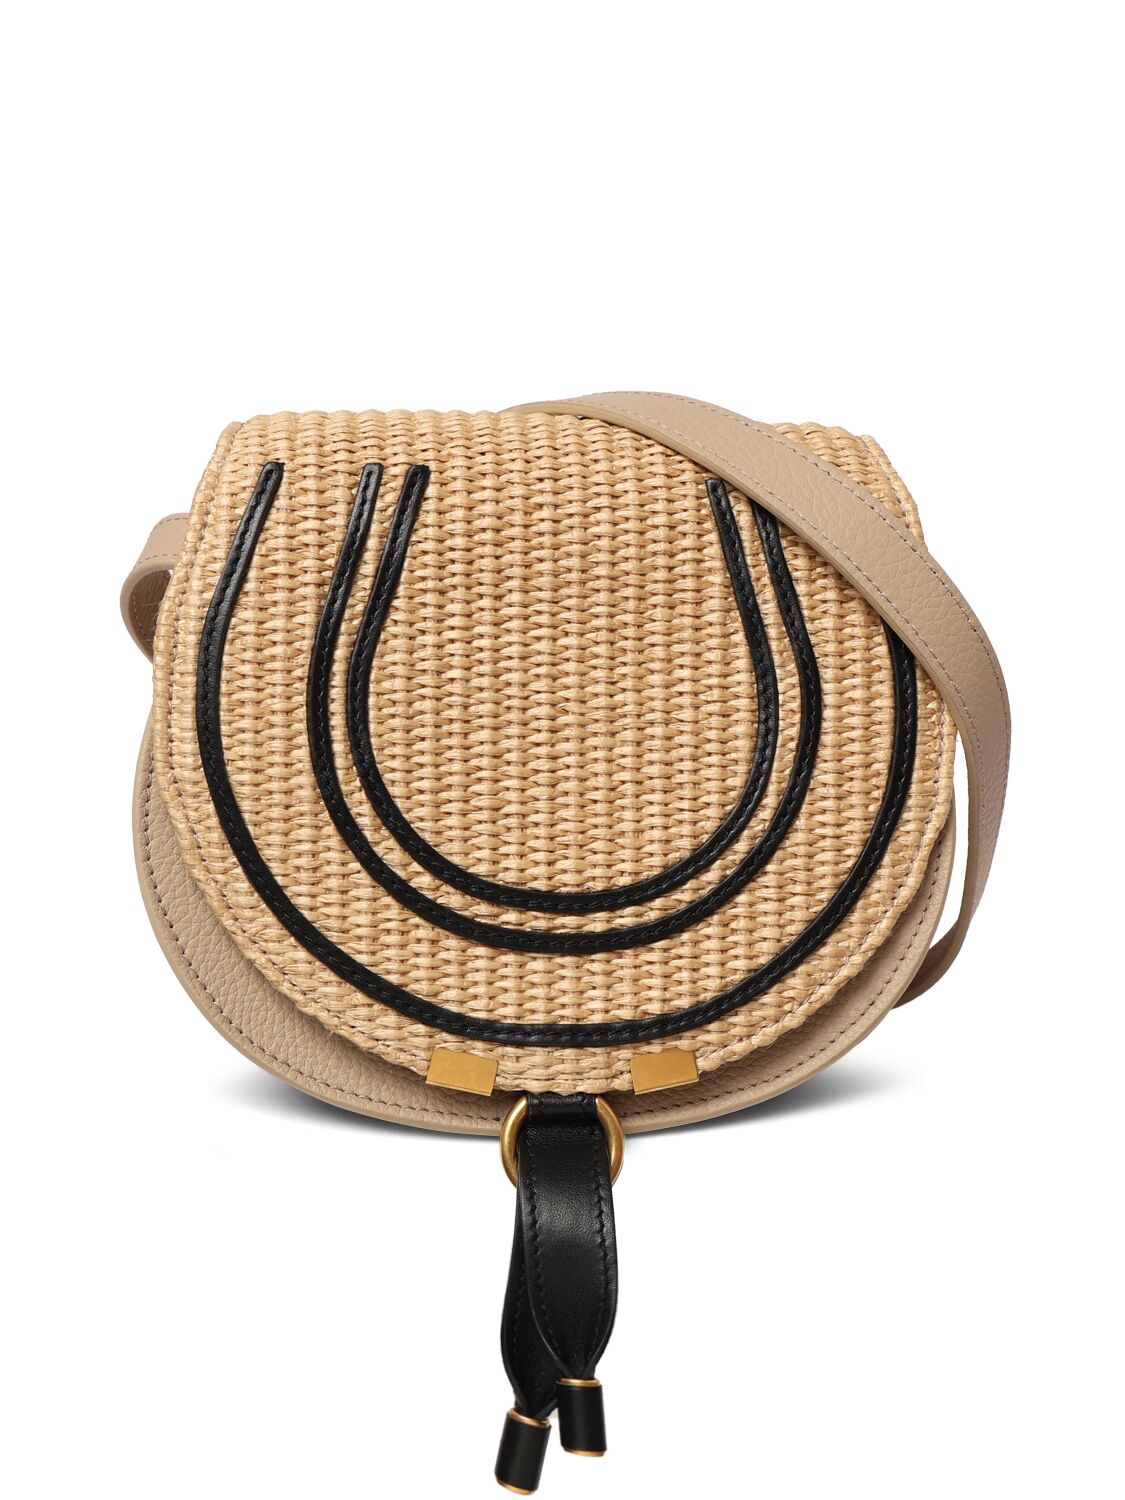 Chloé Marcie Leather Shoulder Bag In Hot Sand